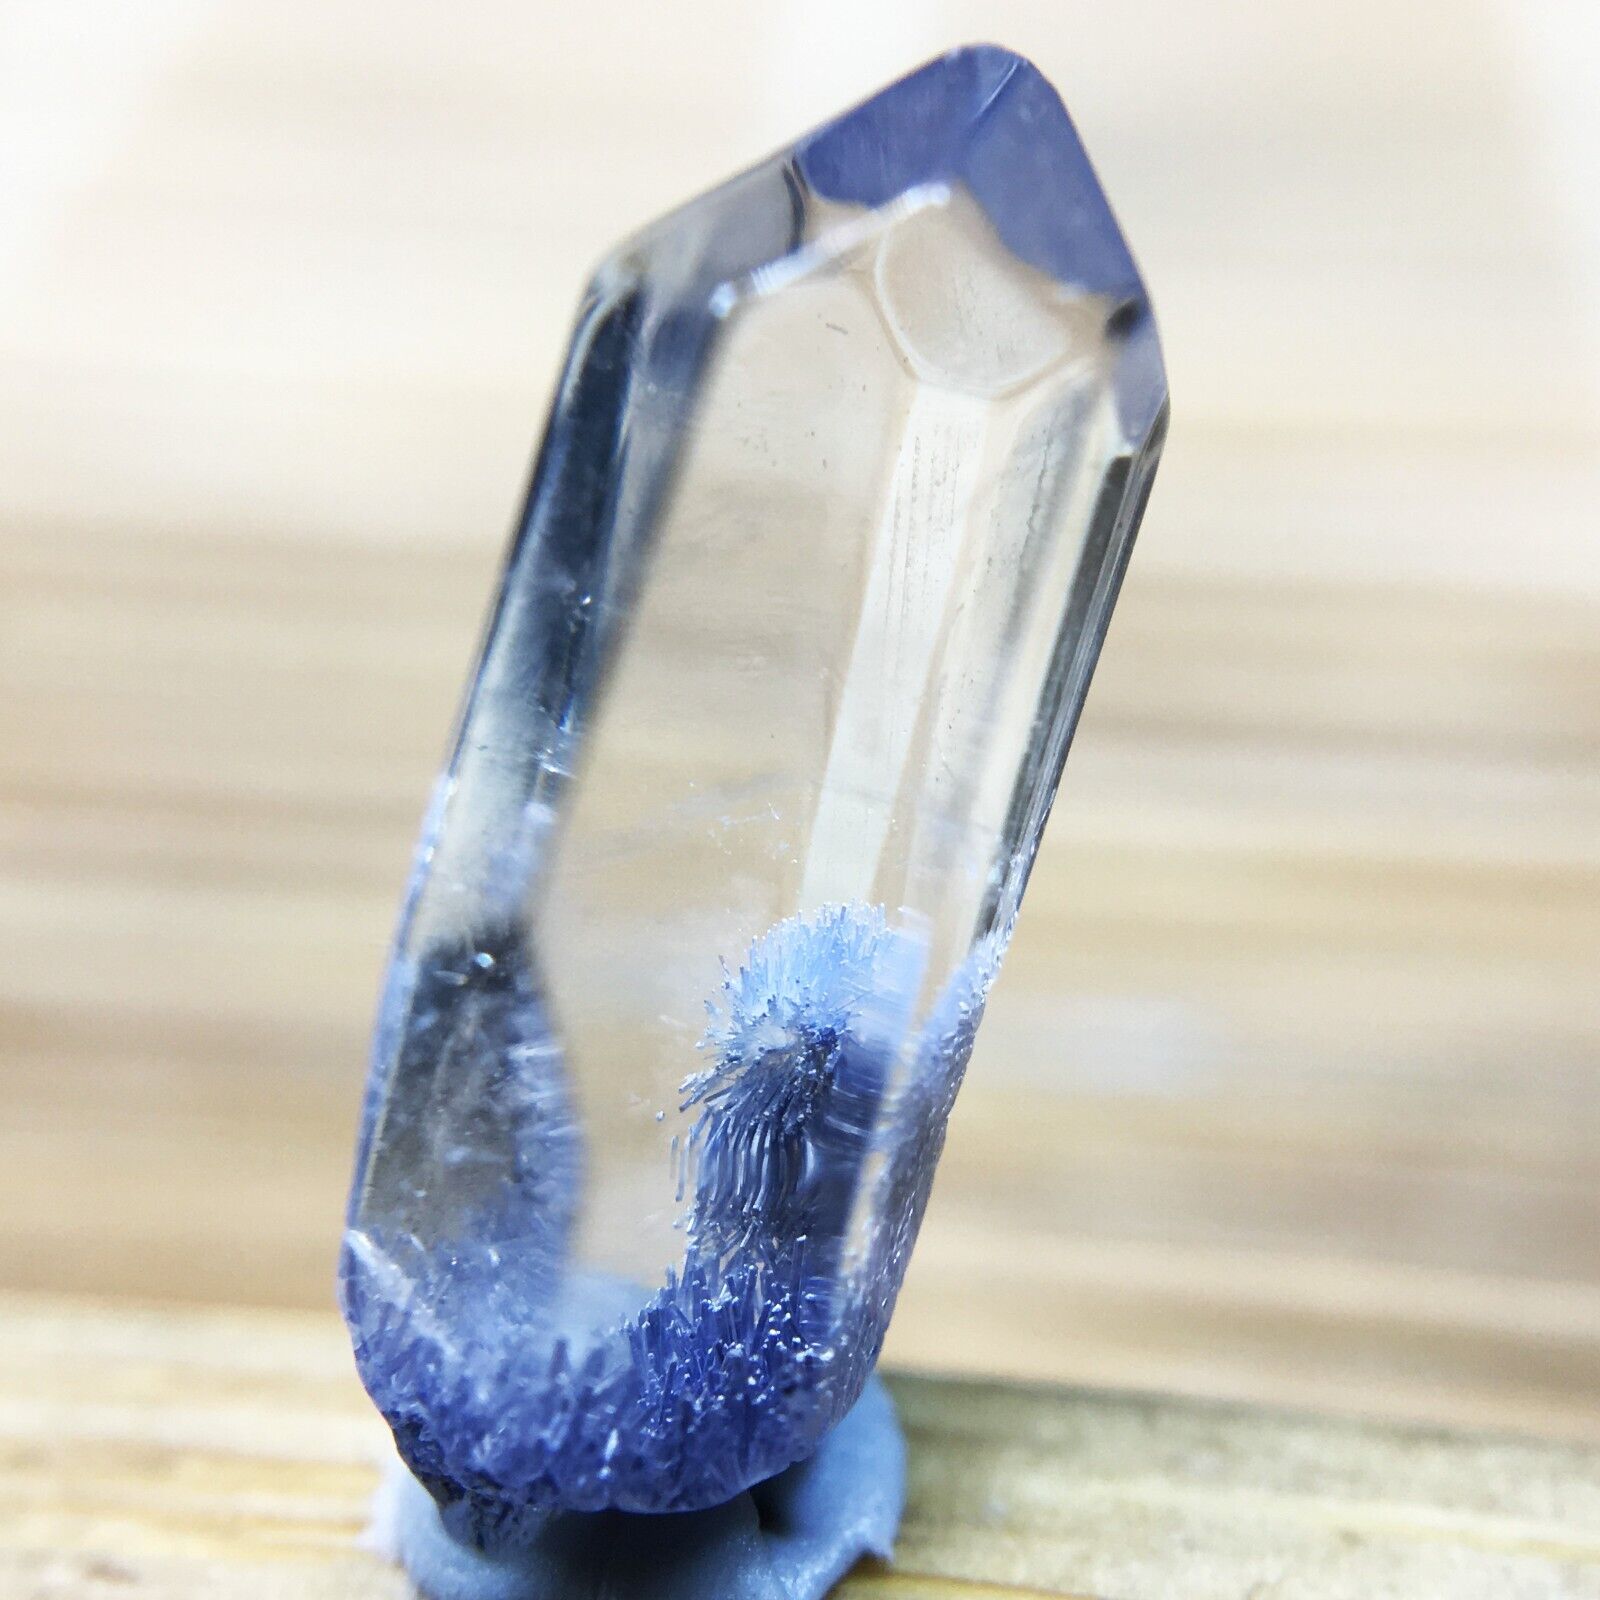 1.8Ct Very Rare NATURAL Beautiful Blue Dumortierite Quartz Crystal Specimen